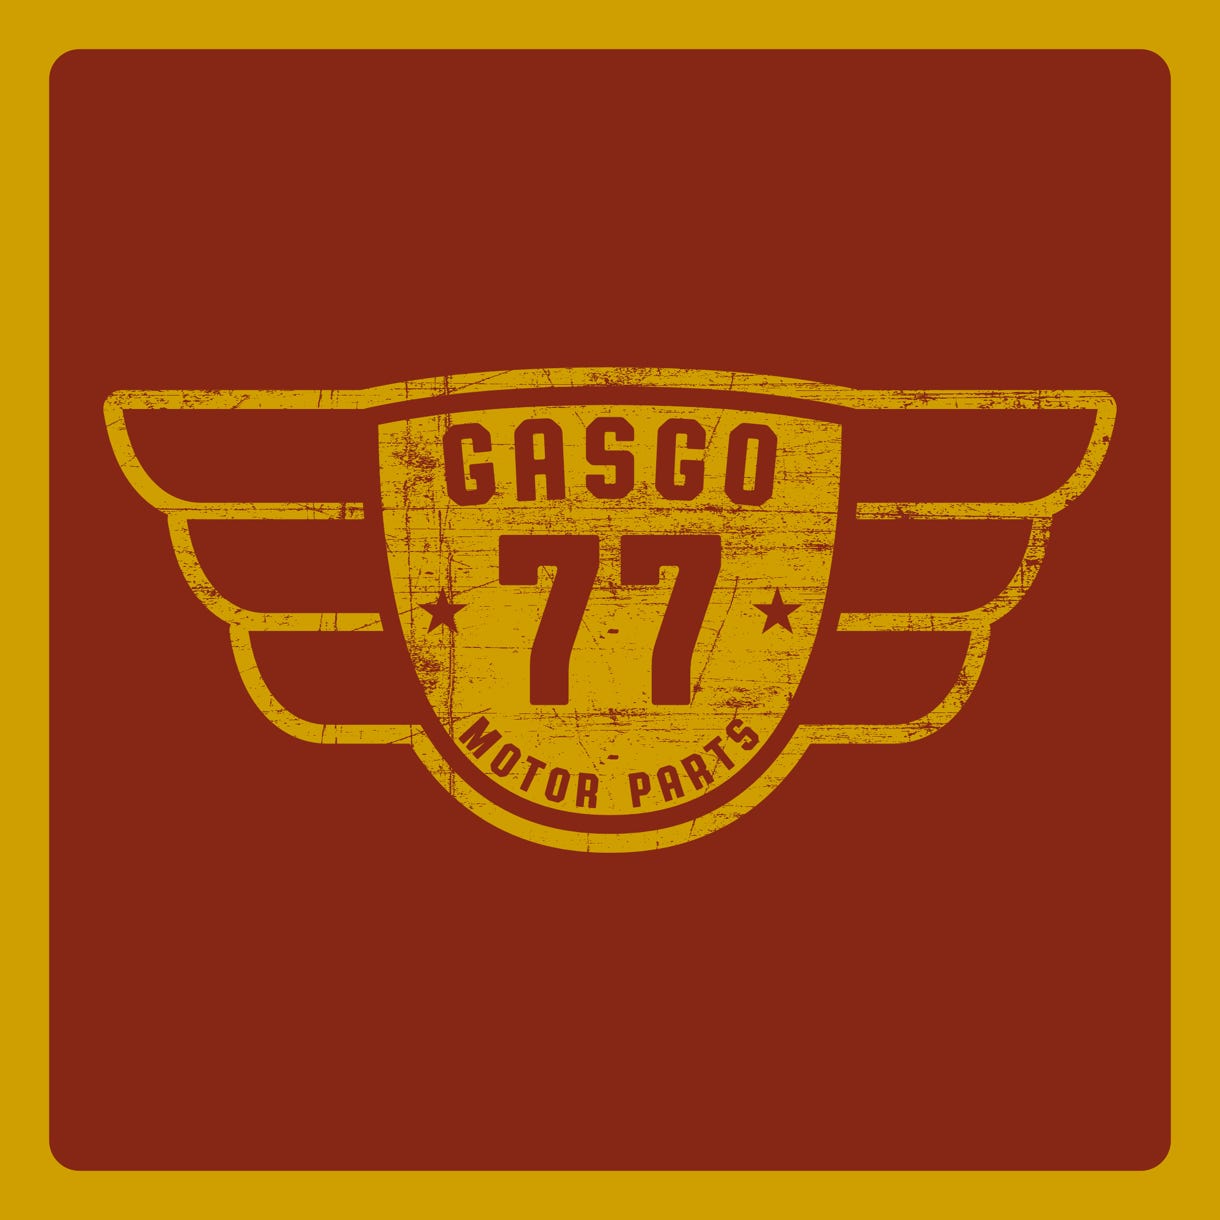 GasGo 77 - Quality Motor Parts Design